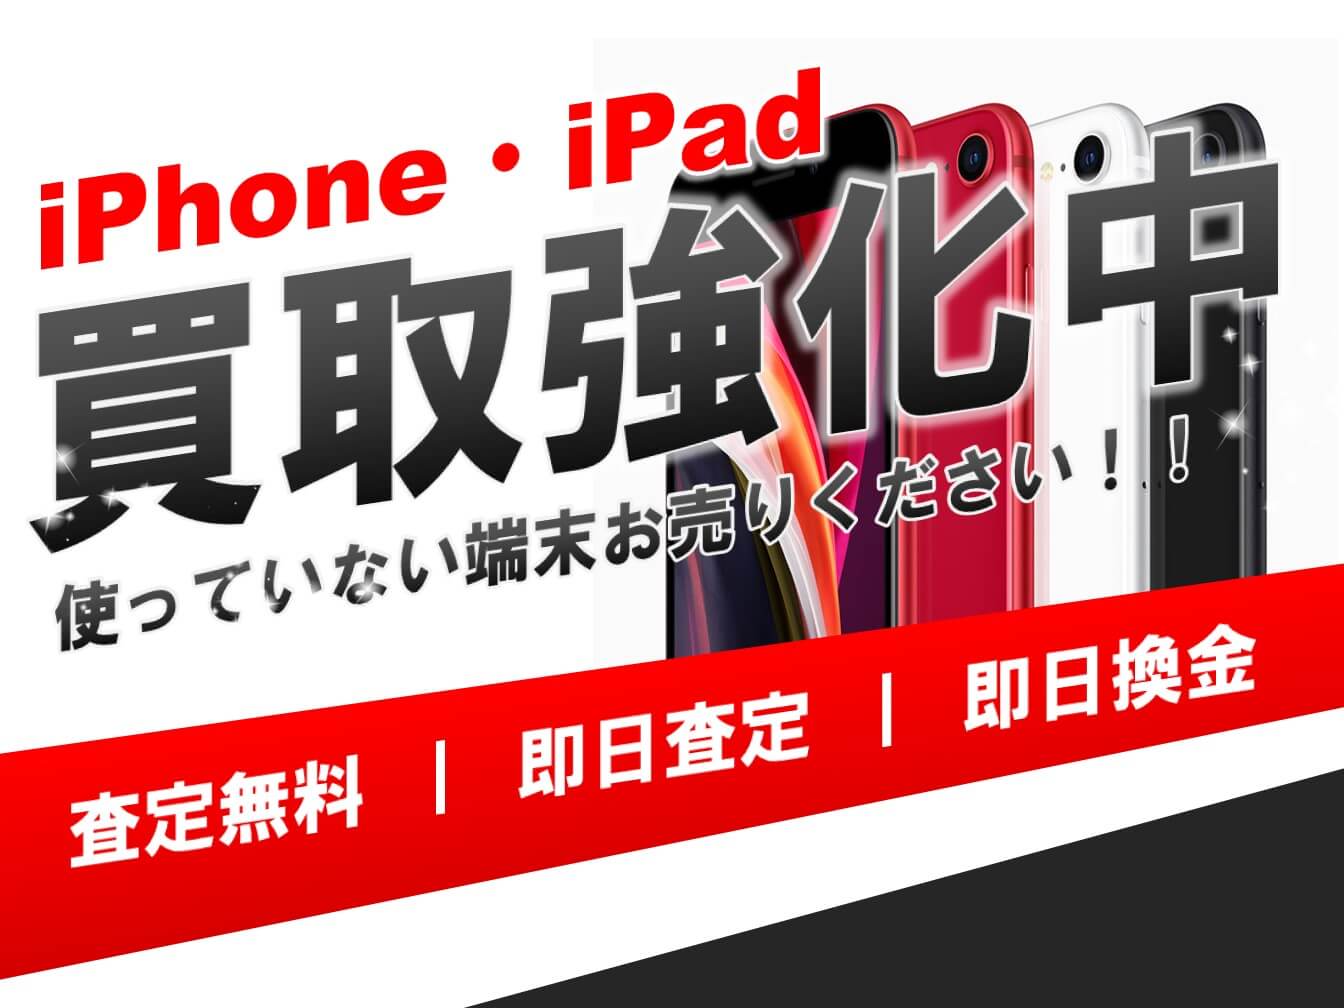 ☆iPhone・iPad買取強化実施中のお知らせ☆